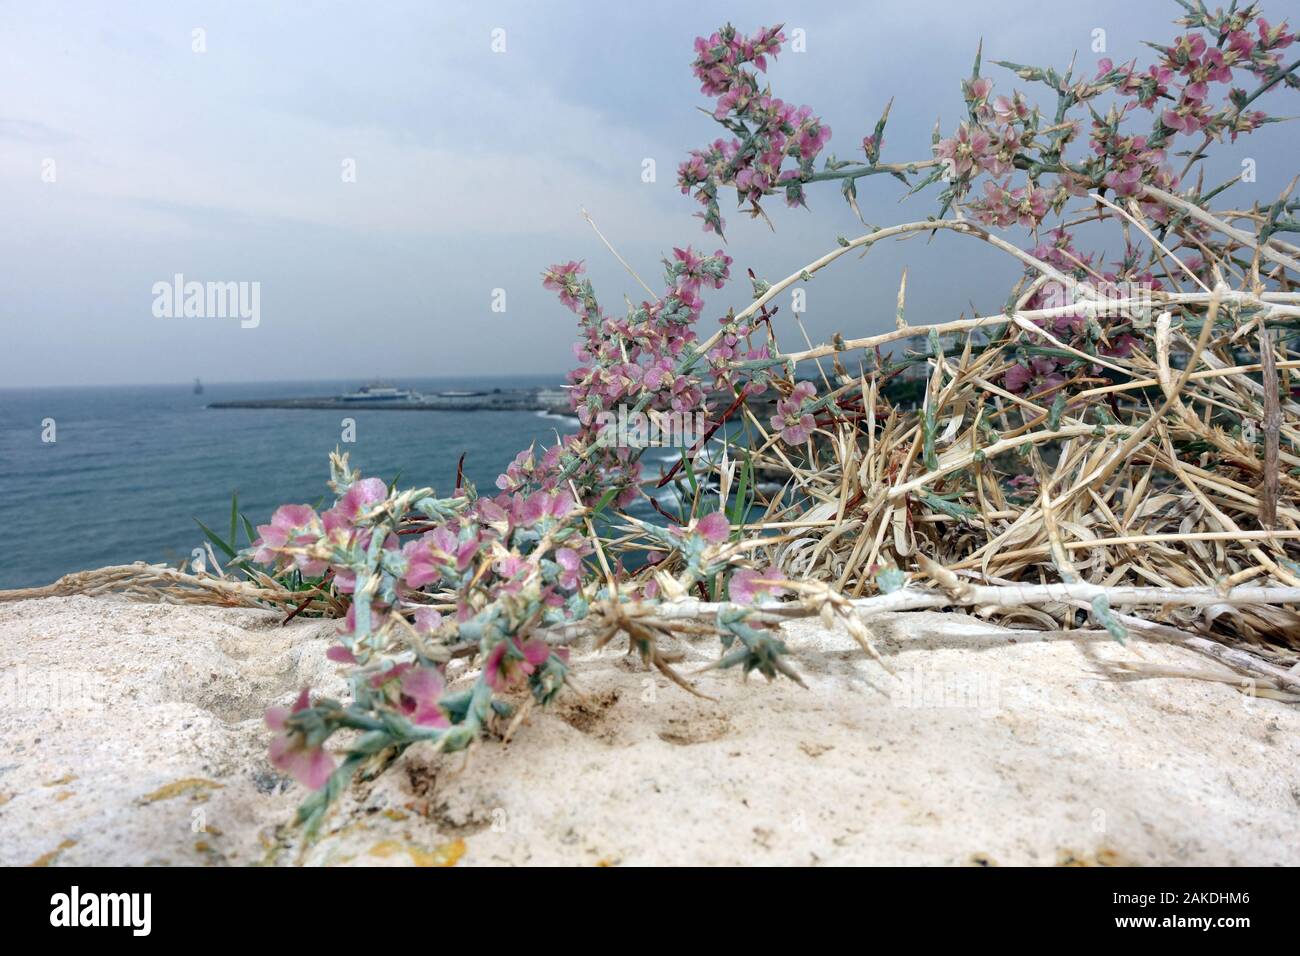 Ruthenisches Salzkraut oder Kali-Salzkraut (Salsola tragus ssp. tragus) auf den Mauern des Kastells, Kyrenia / Girne, Türkische Republik Nordzypern Stock Photo